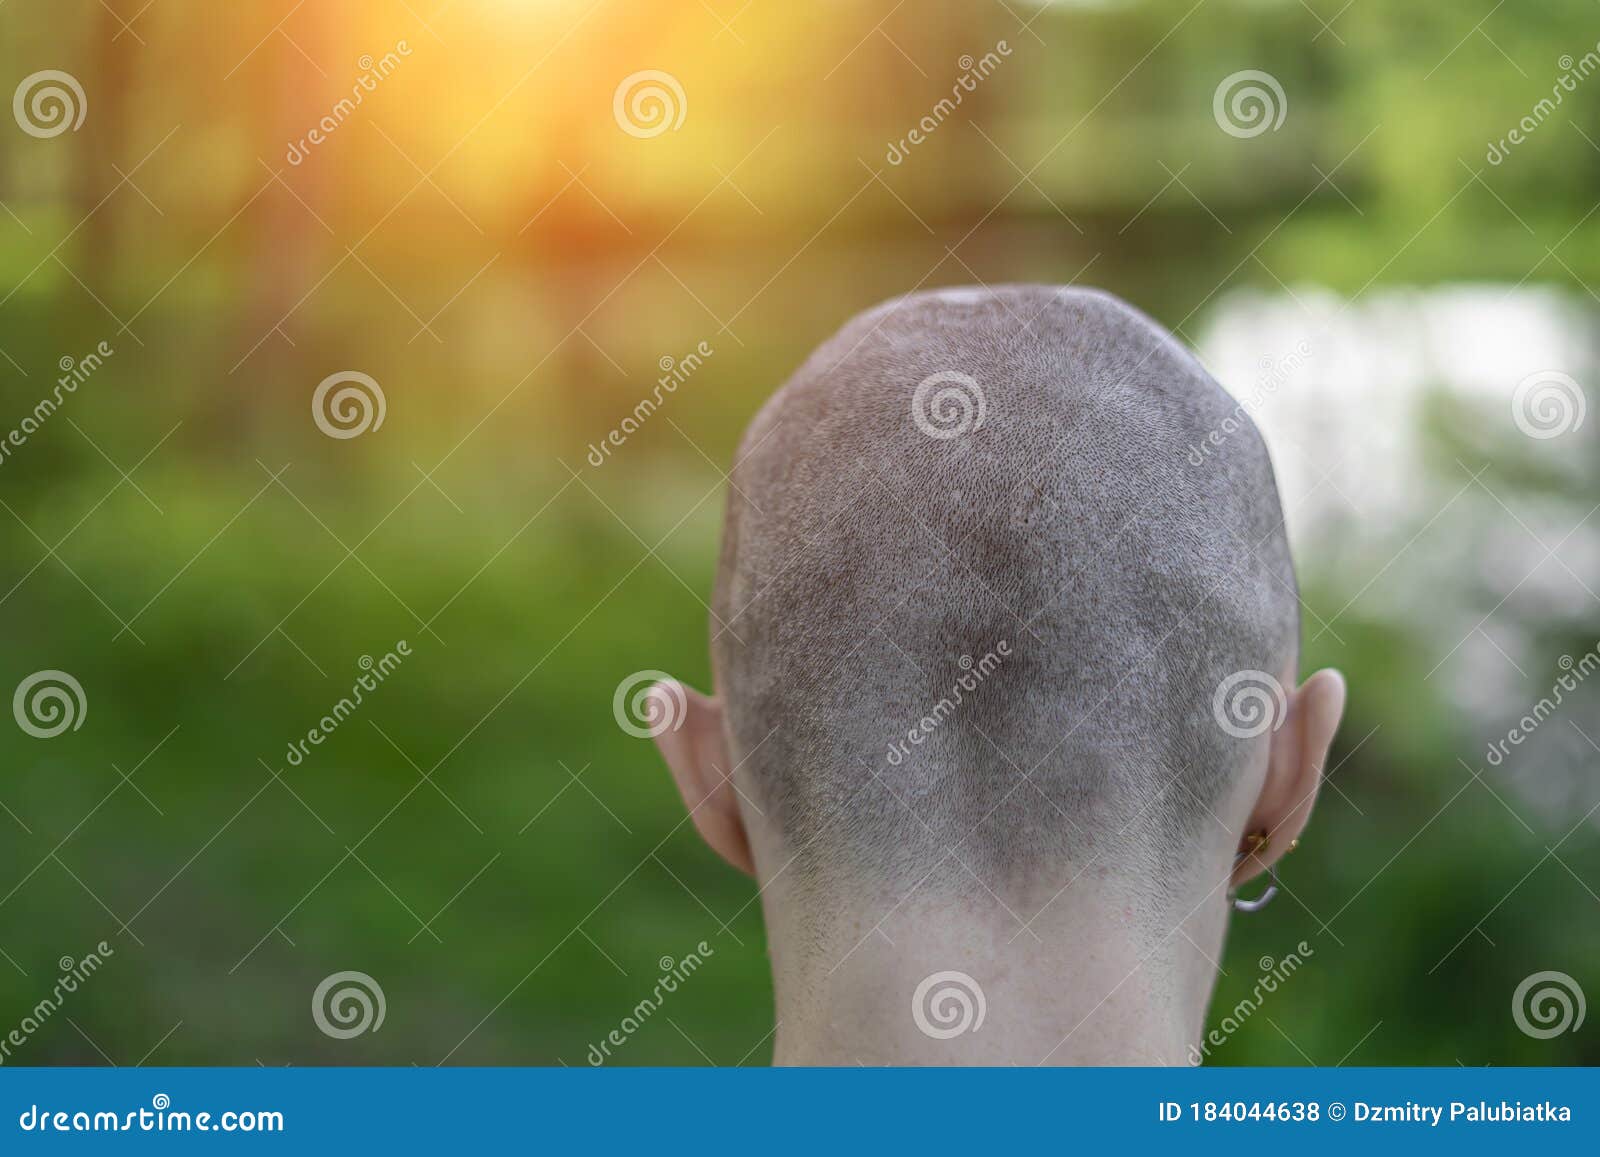 因癌症而接受化疗的秃顶女人正在掉头发照片摄影图片_ID:312462885-Veer图库